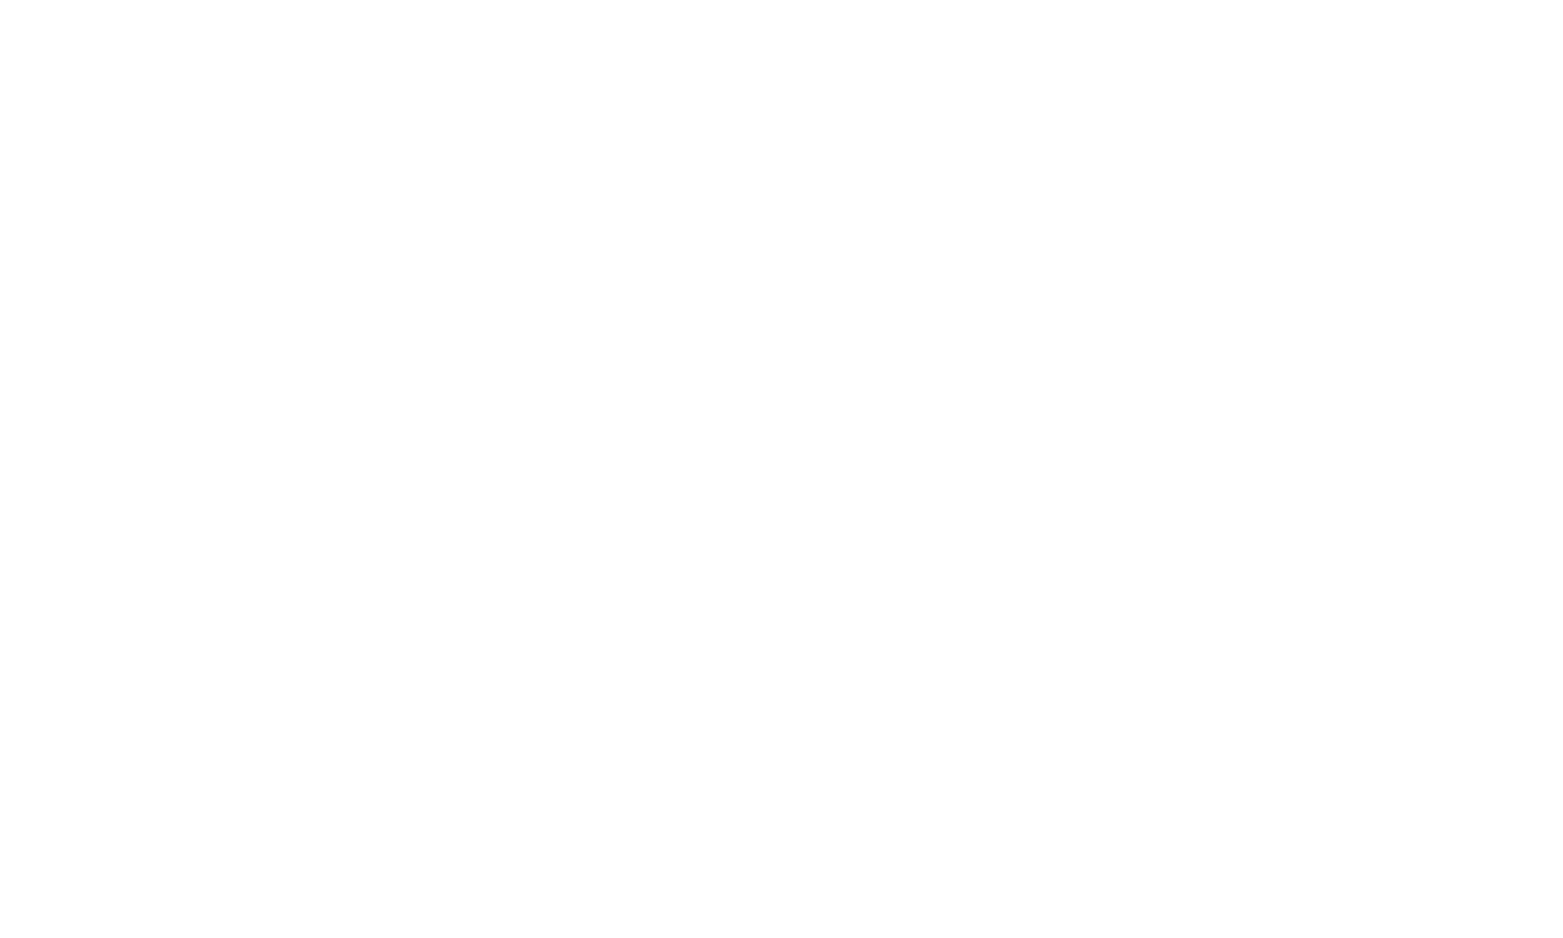 "Go Interior Design"